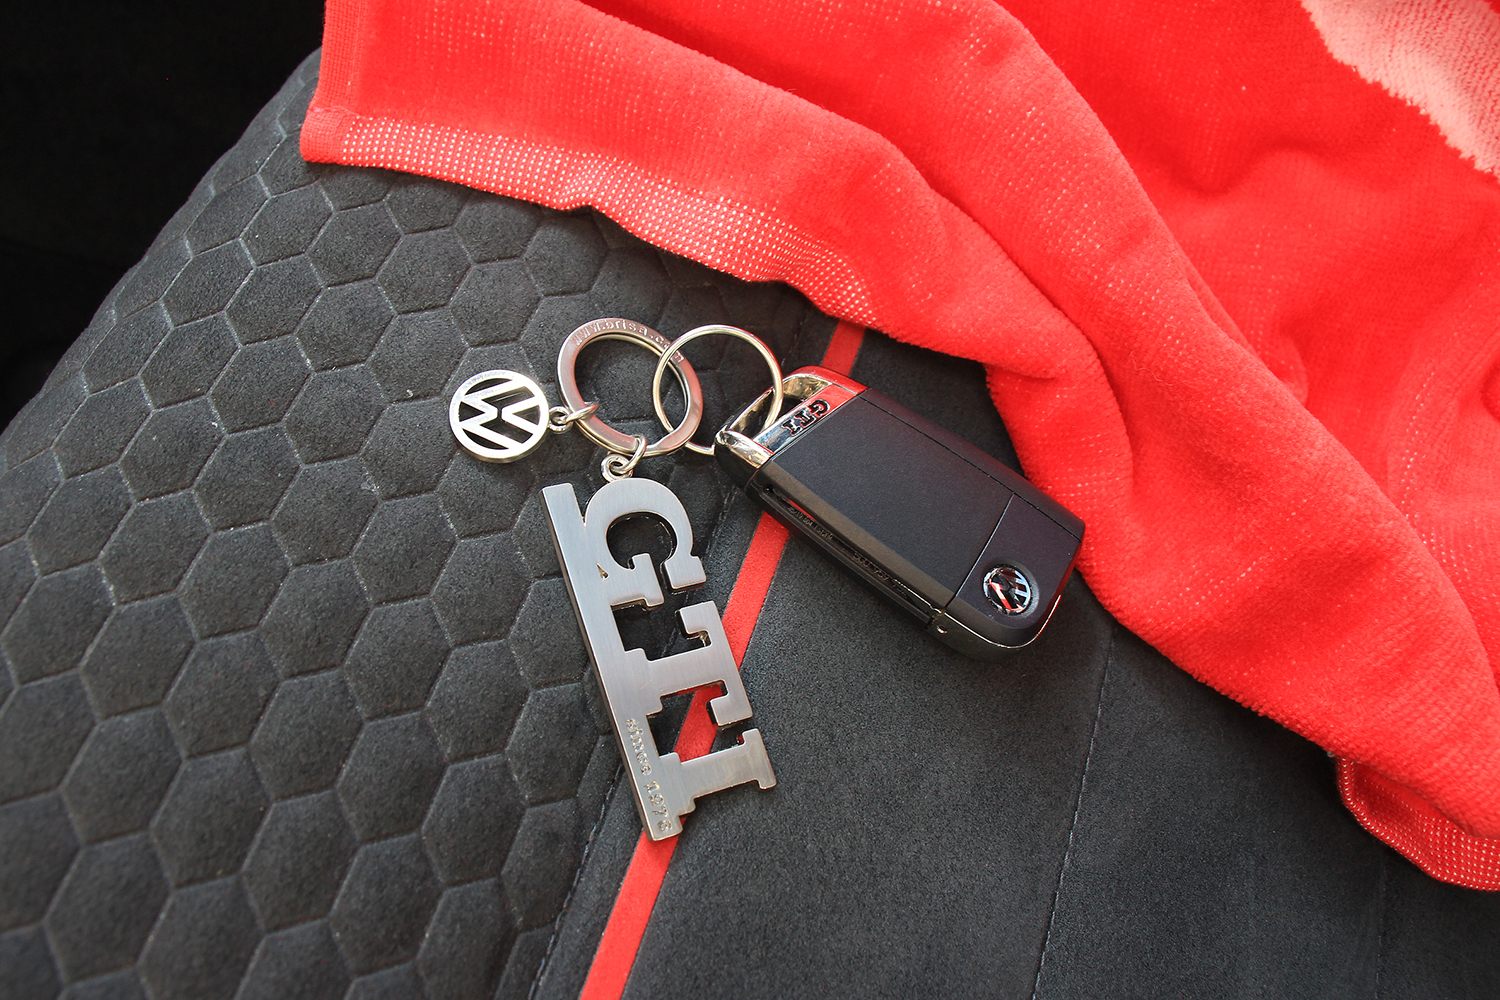 GTI Schlüsselanhänger mit Charm in Sichtverpackung - since 1976, Farbe:  silber